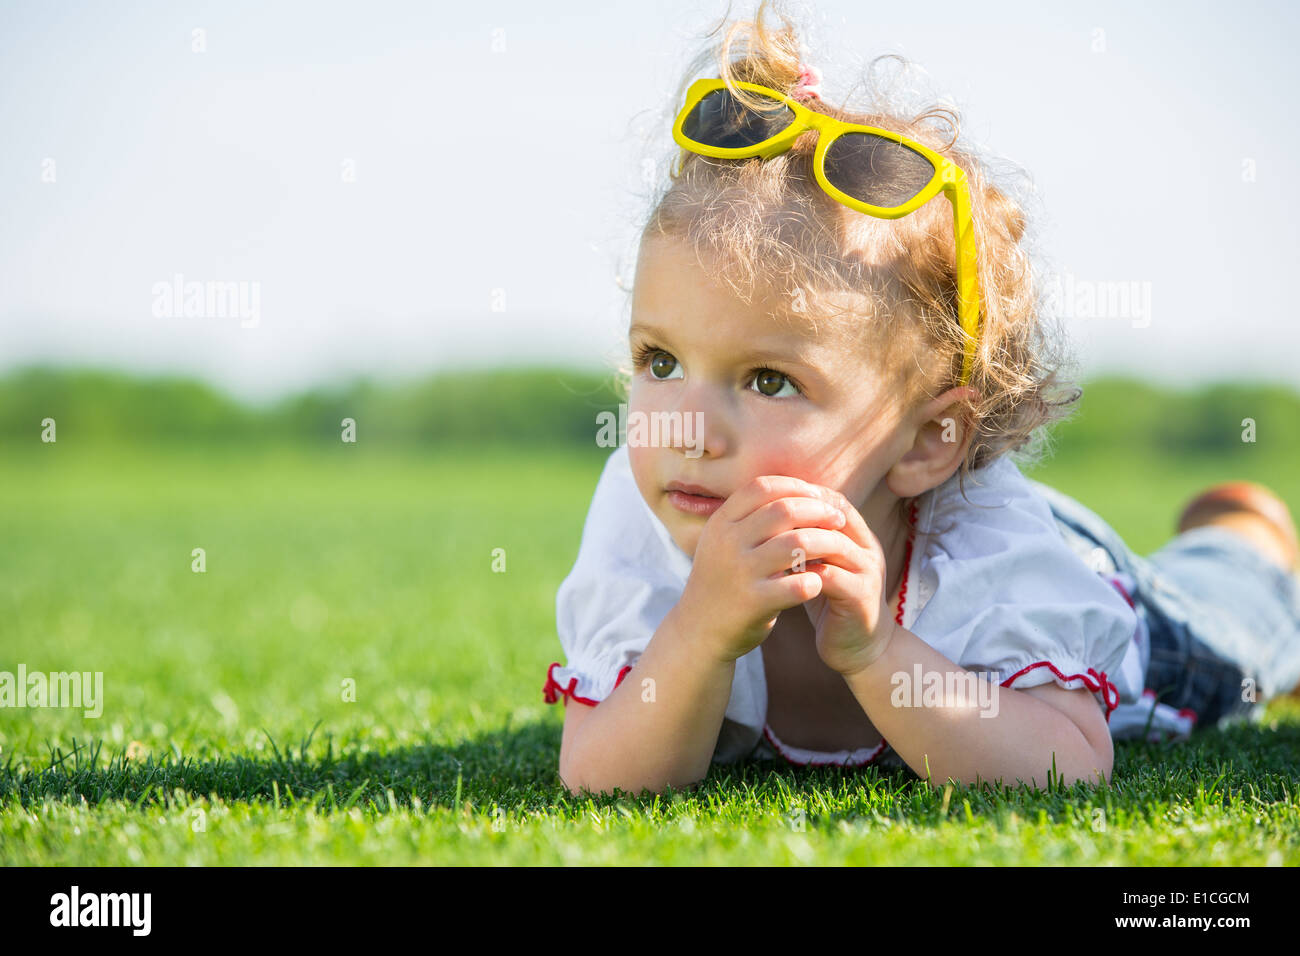 Jolie petite fille avec des lunettes de soleil jaune sur le dessus de sa tête, allongé sur une herbe verte fraîche dans un champ Banque D'Images